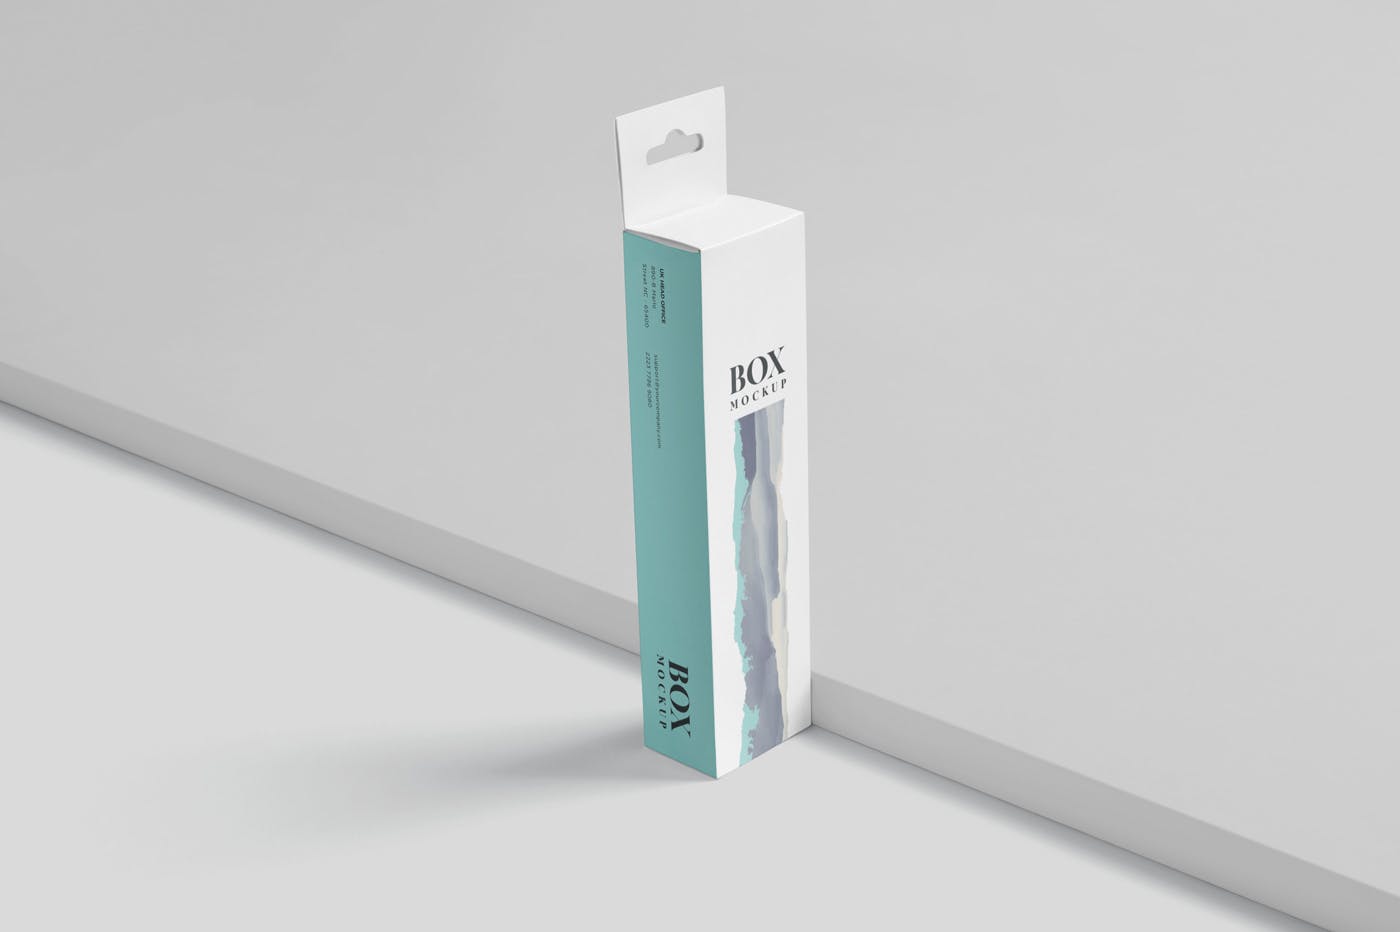 超薄矩形长条包装盒外观设计效果图样机 Box Mockup PSDs – High Slim Rectangle Size Hanger设计素材模板